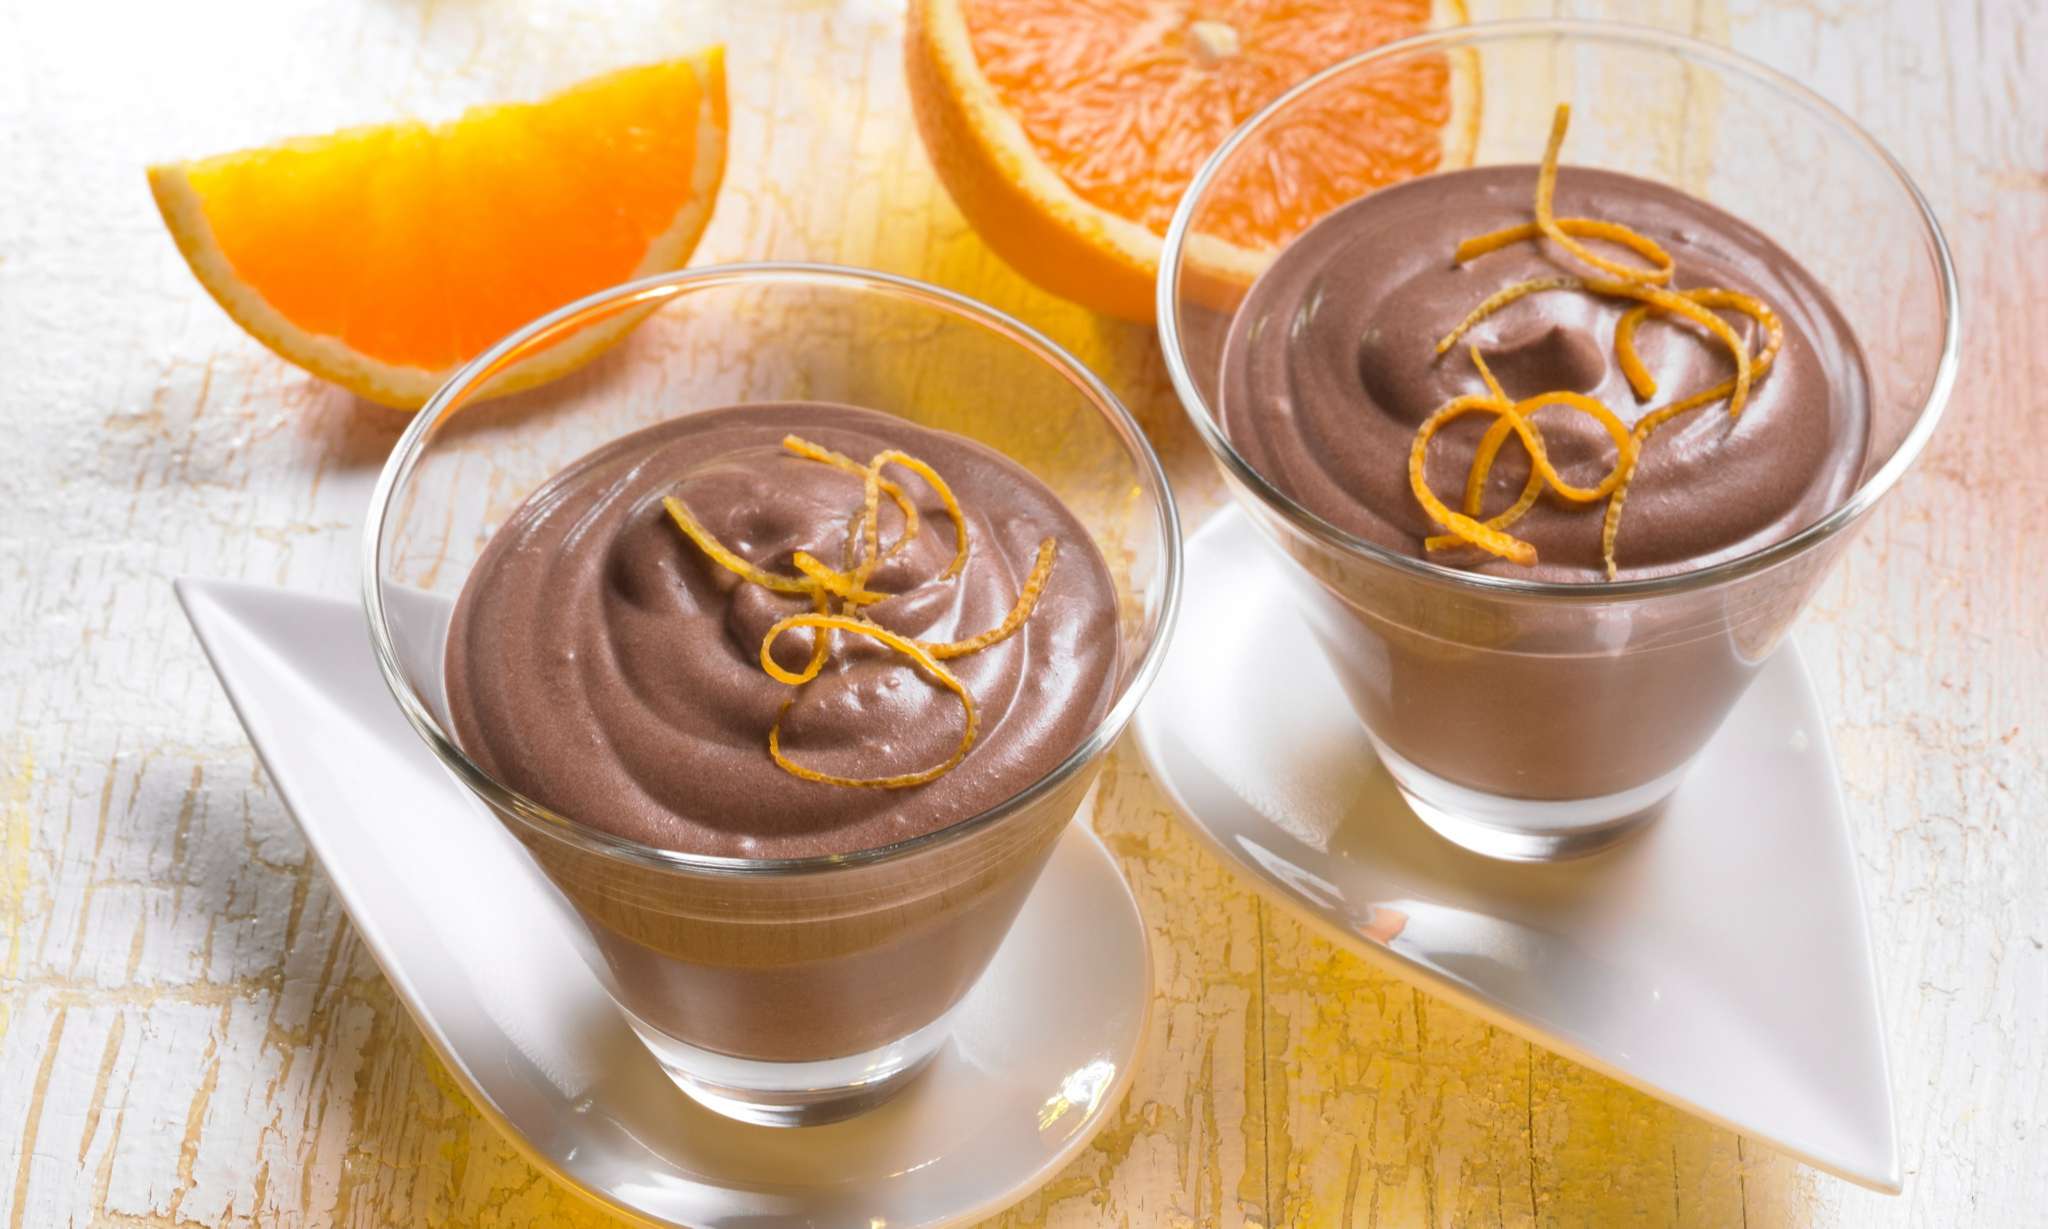 A Csokis-narancslikőrös desszert pudingos pohárkrém desszert, mely nagyszerűen helyt áll vendégváró meglepetésként.